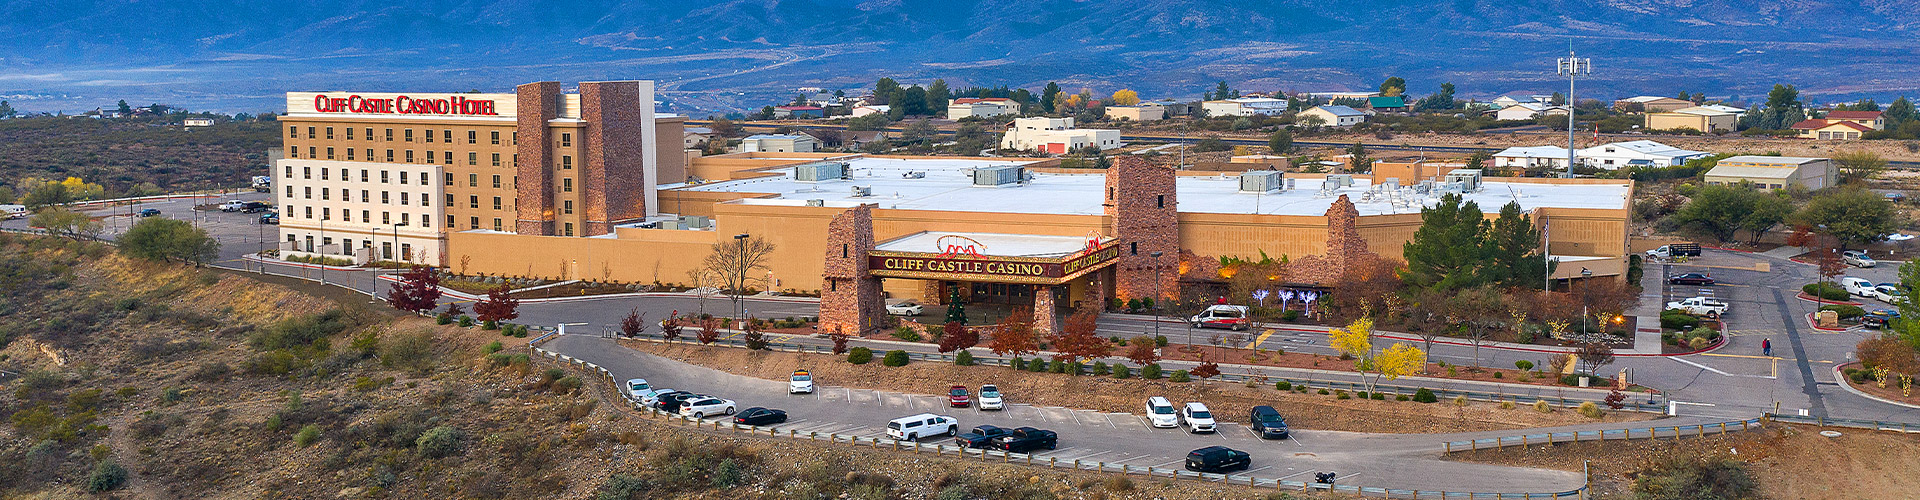 Aerial shot of casino